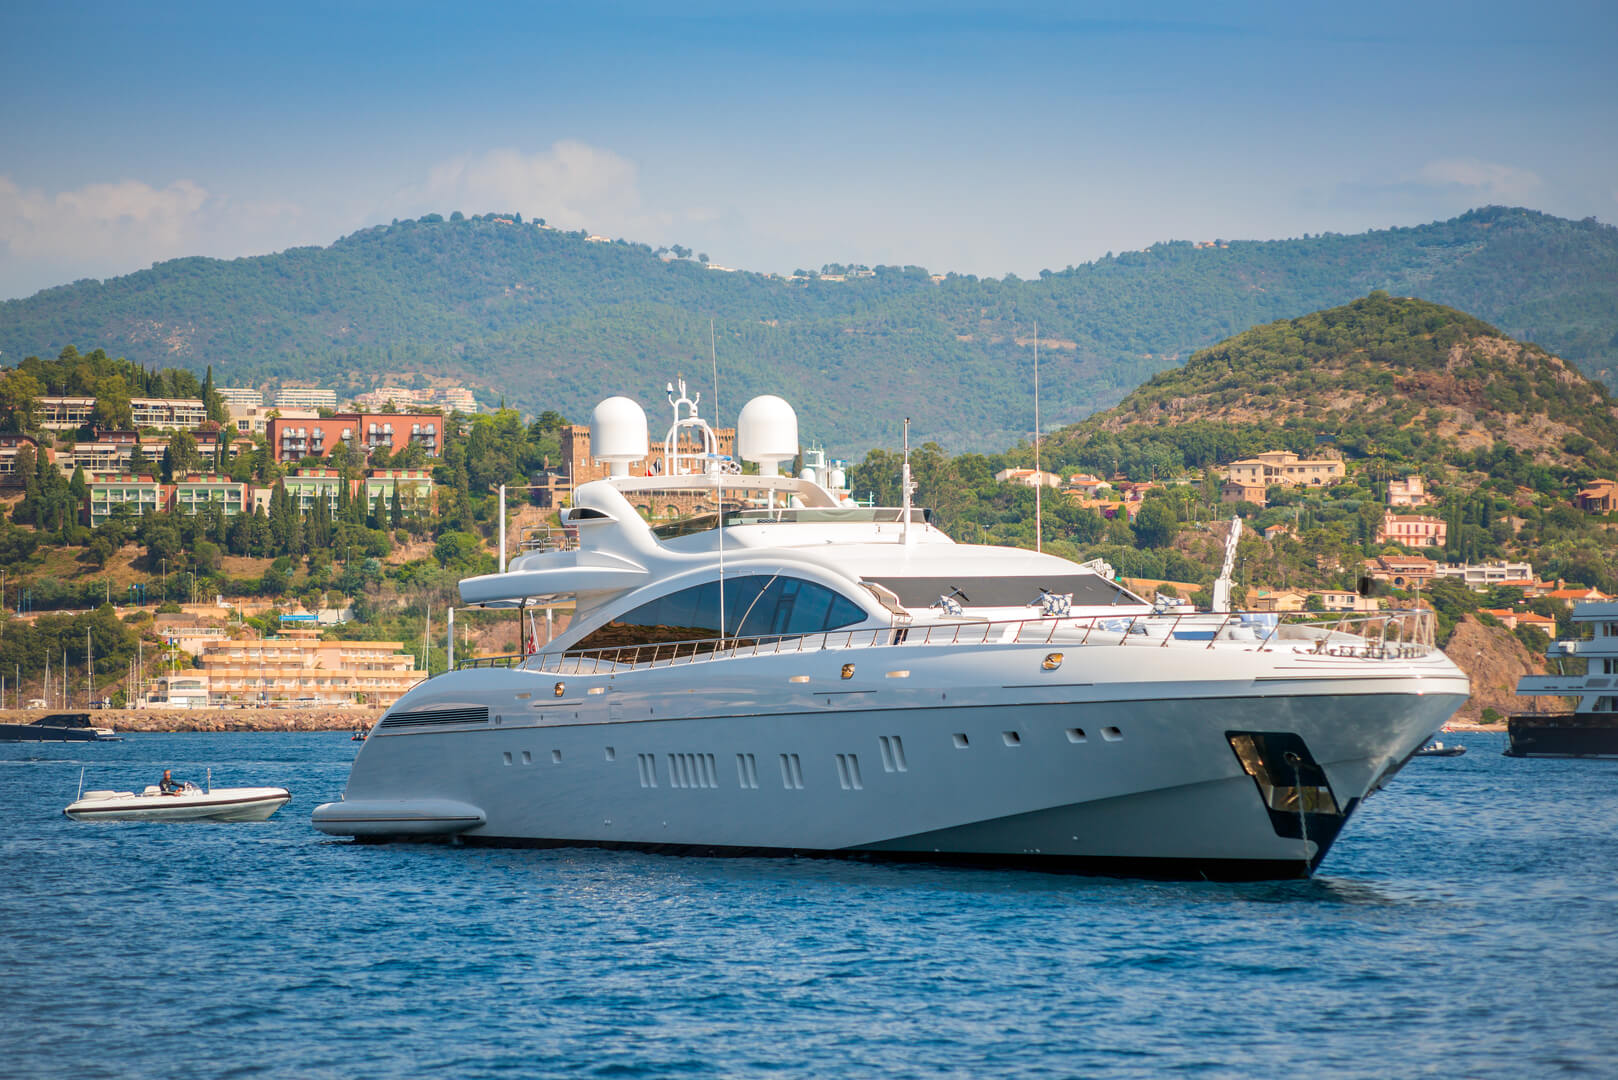 Grande yacht a motore bianco ancorato nella baia di Cannes, Francia durante l'estate con cuscini sul ponte superiore per l'intrattenimento degli ospiti